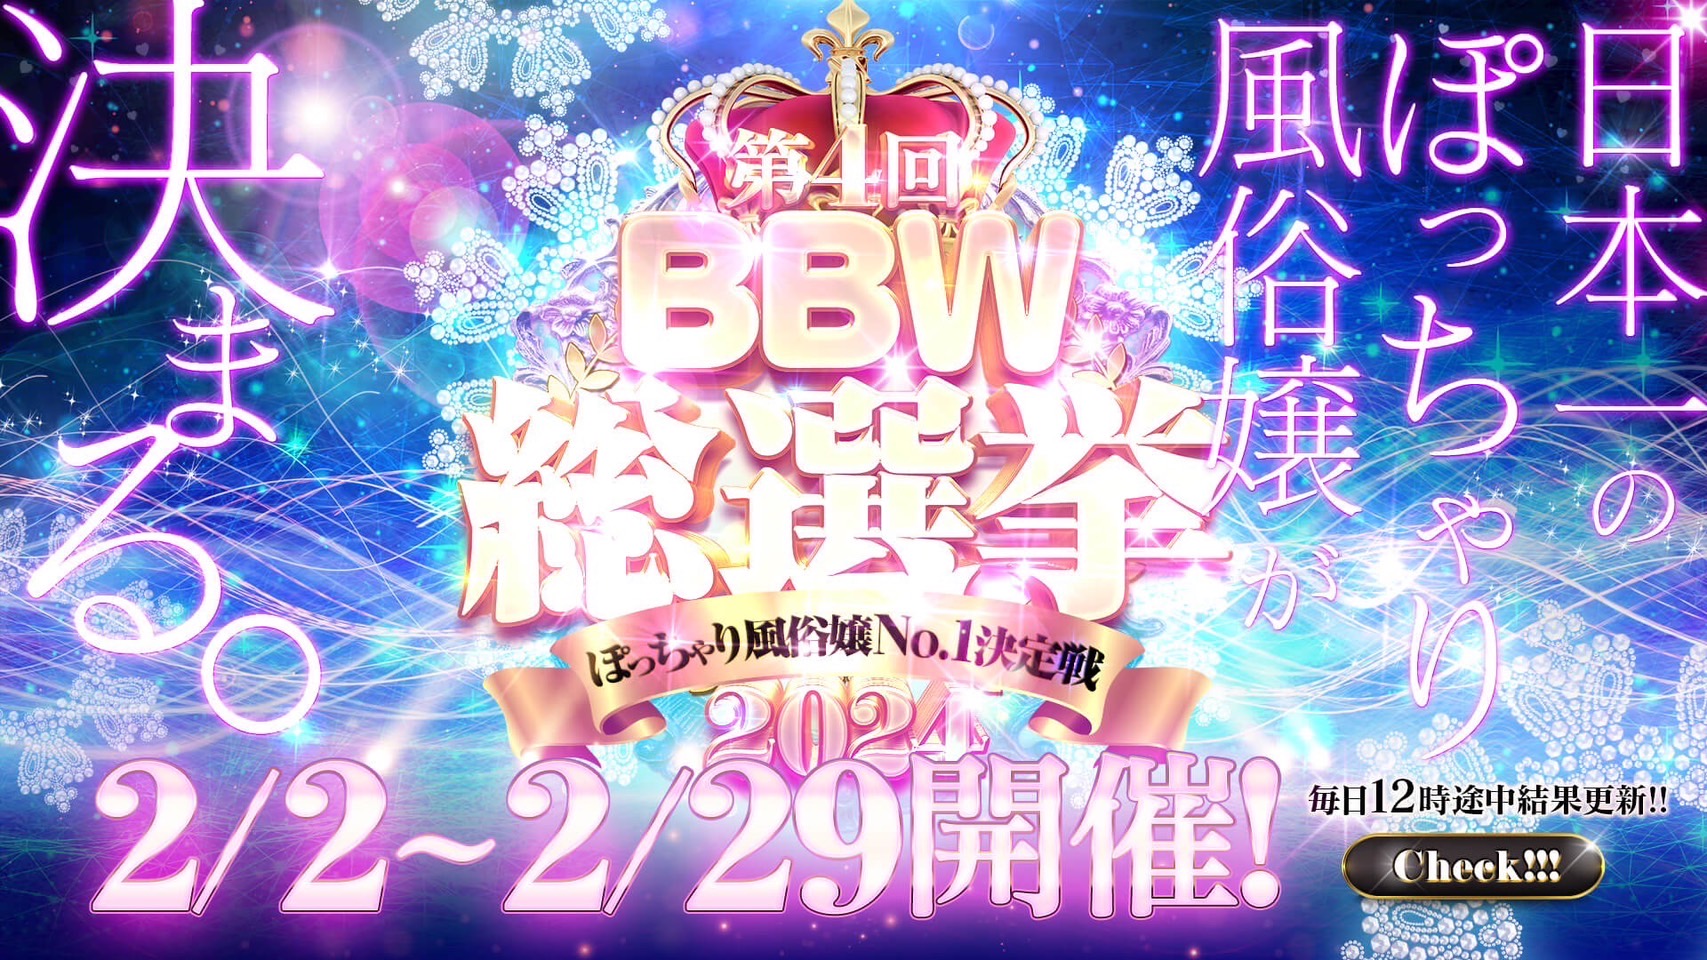 西川口ぽっちゃり風俗 BBW第4回【BBW総選挙】